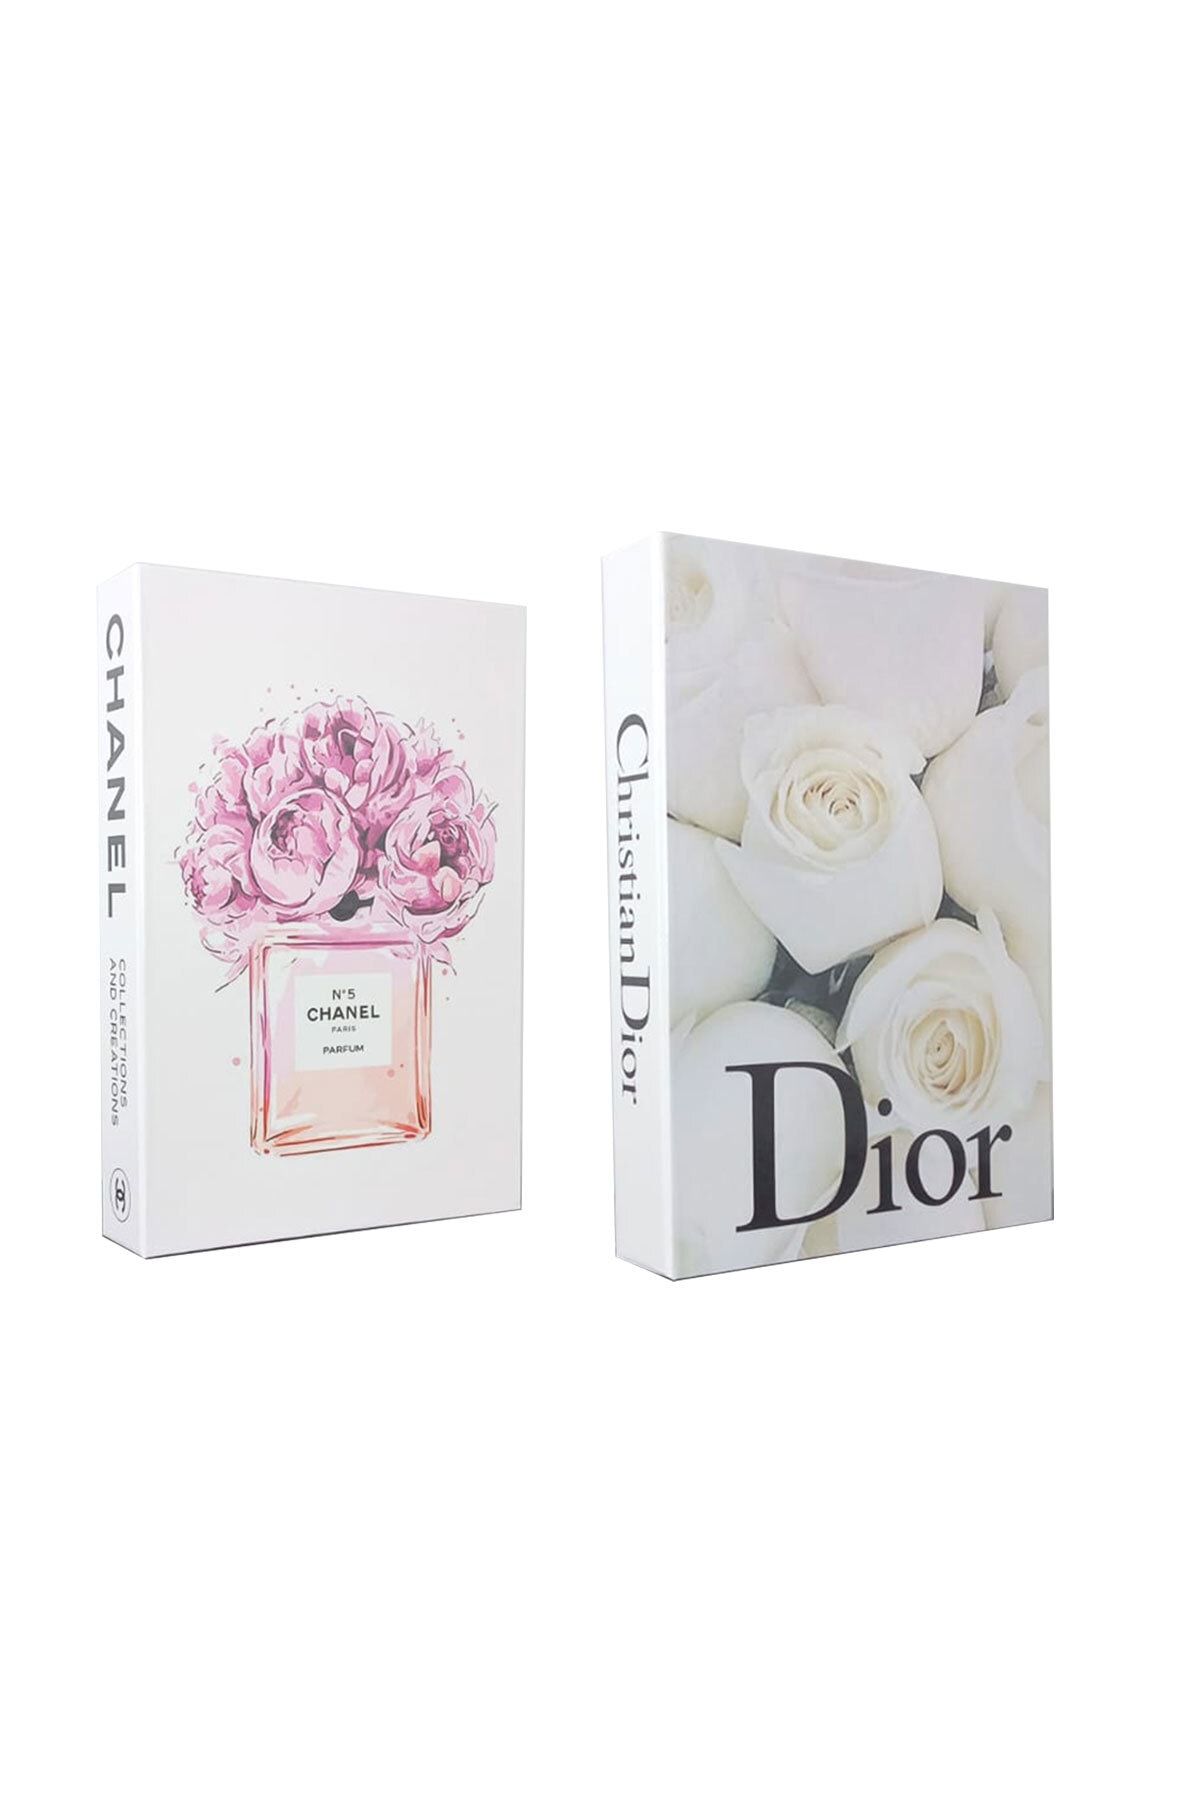 BayCazip 2'li Dekoratif Kitap Görünümlü Kutu No5 Chanel & Dior Beyaz Gül Temalı